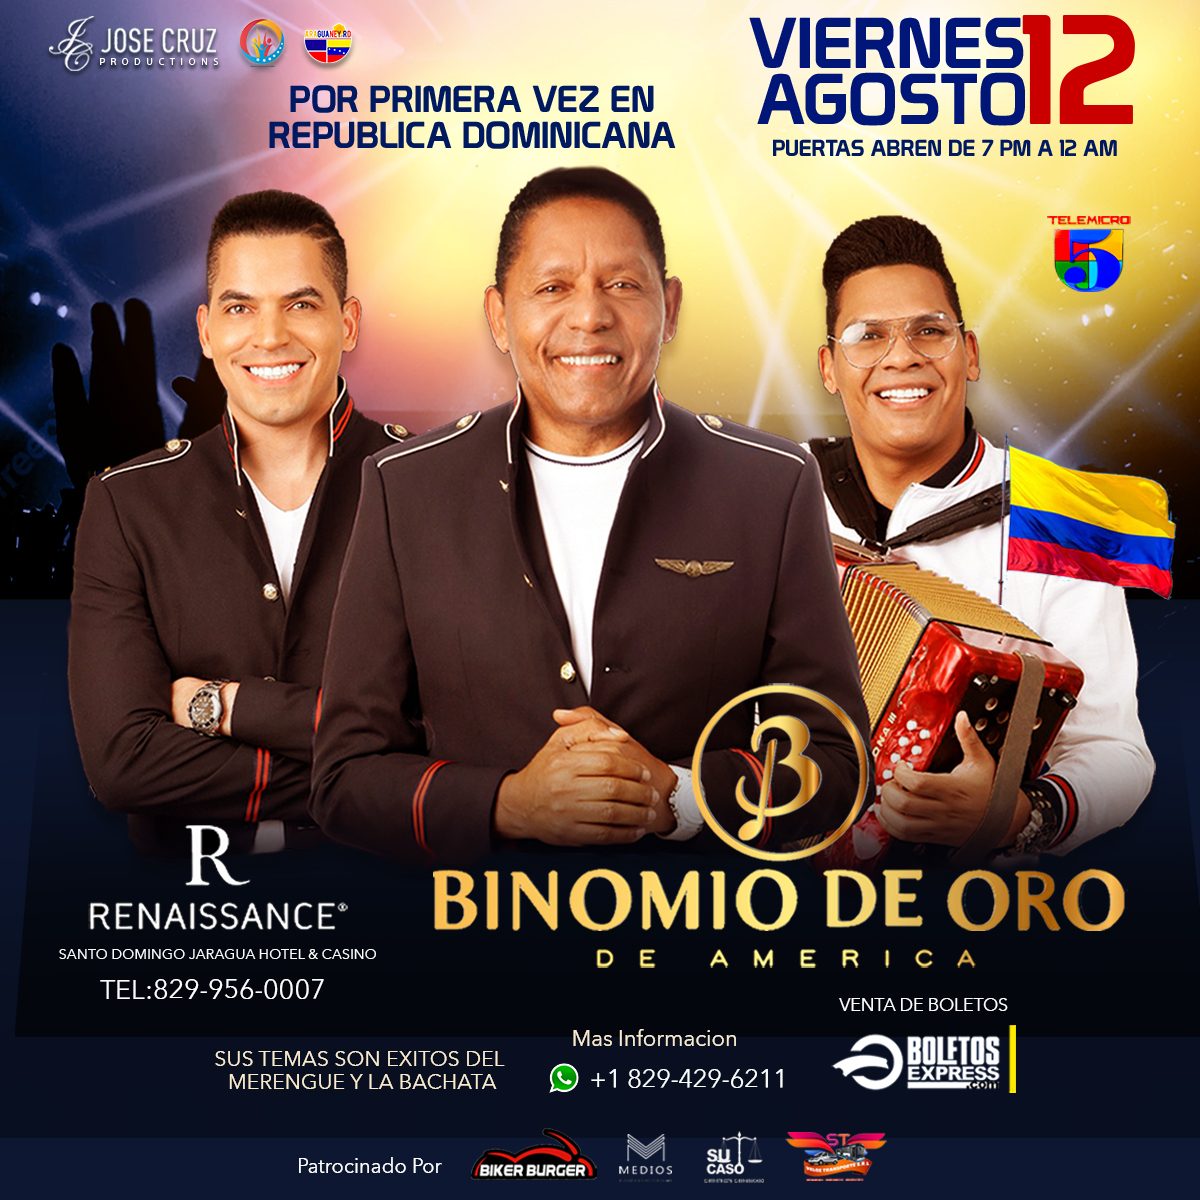 BINOMIO DE ORO Tickets ExpressTix